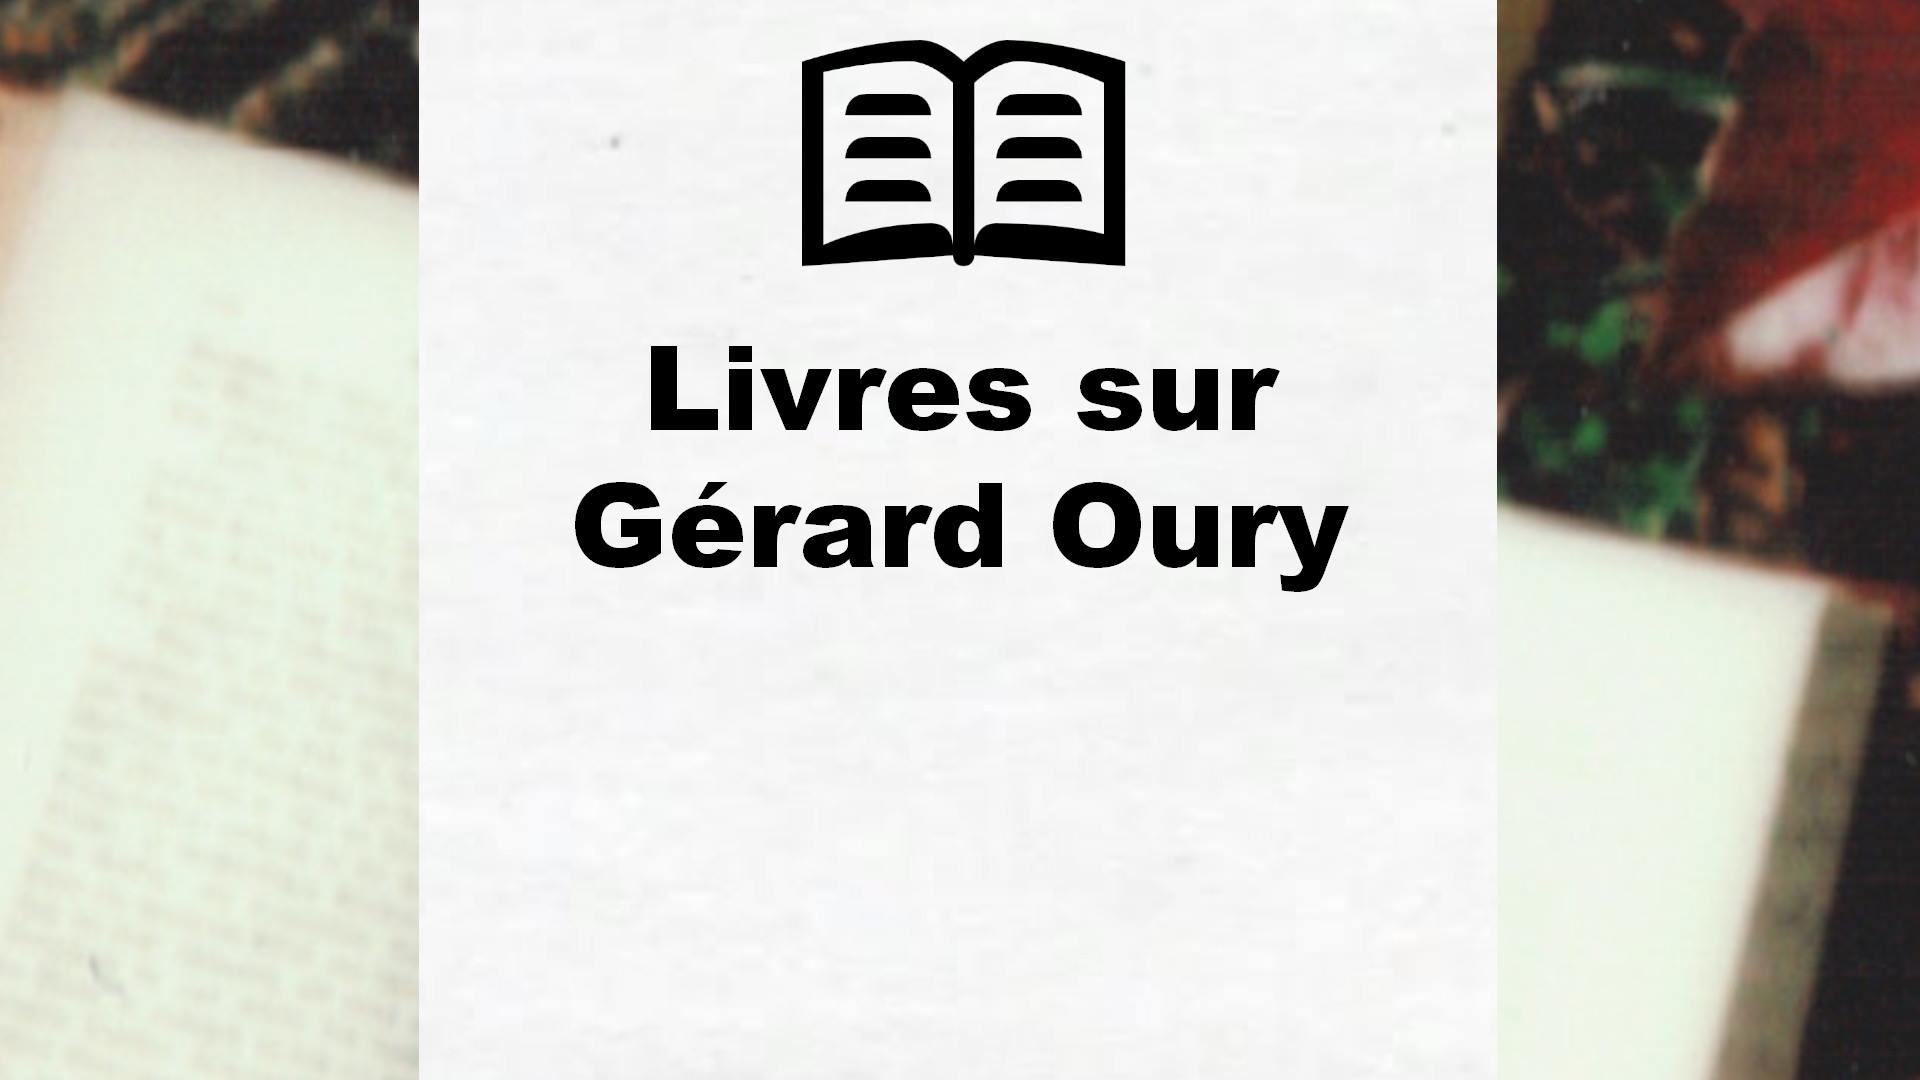 Livres sur Gérard Oury